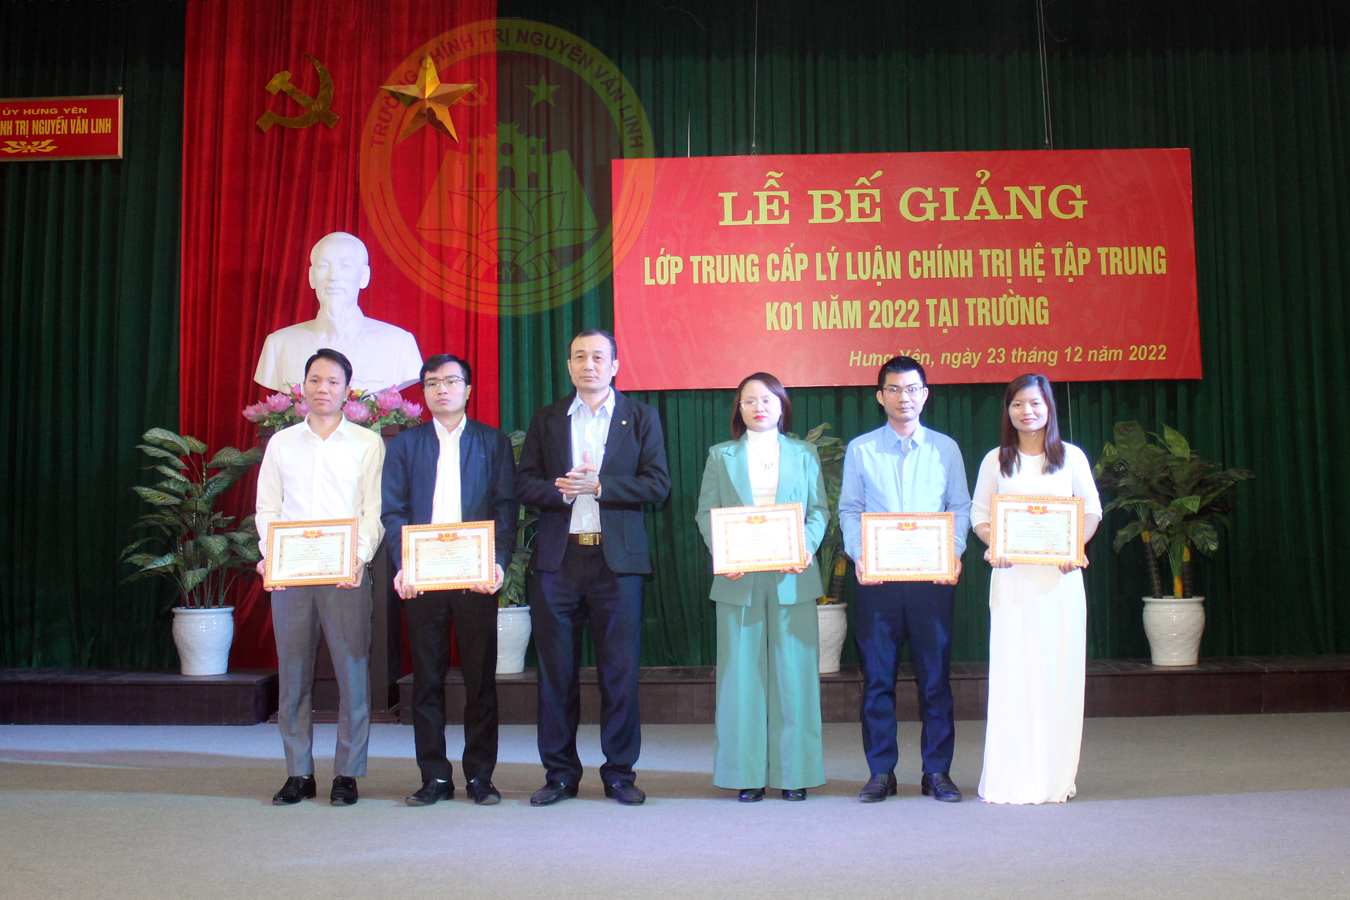 Bế giảng lớp Trung cấp lý luận chính trị hệ tập trung K01 năm 2022 tại trường Chính trị Nguyễn Văn Linh